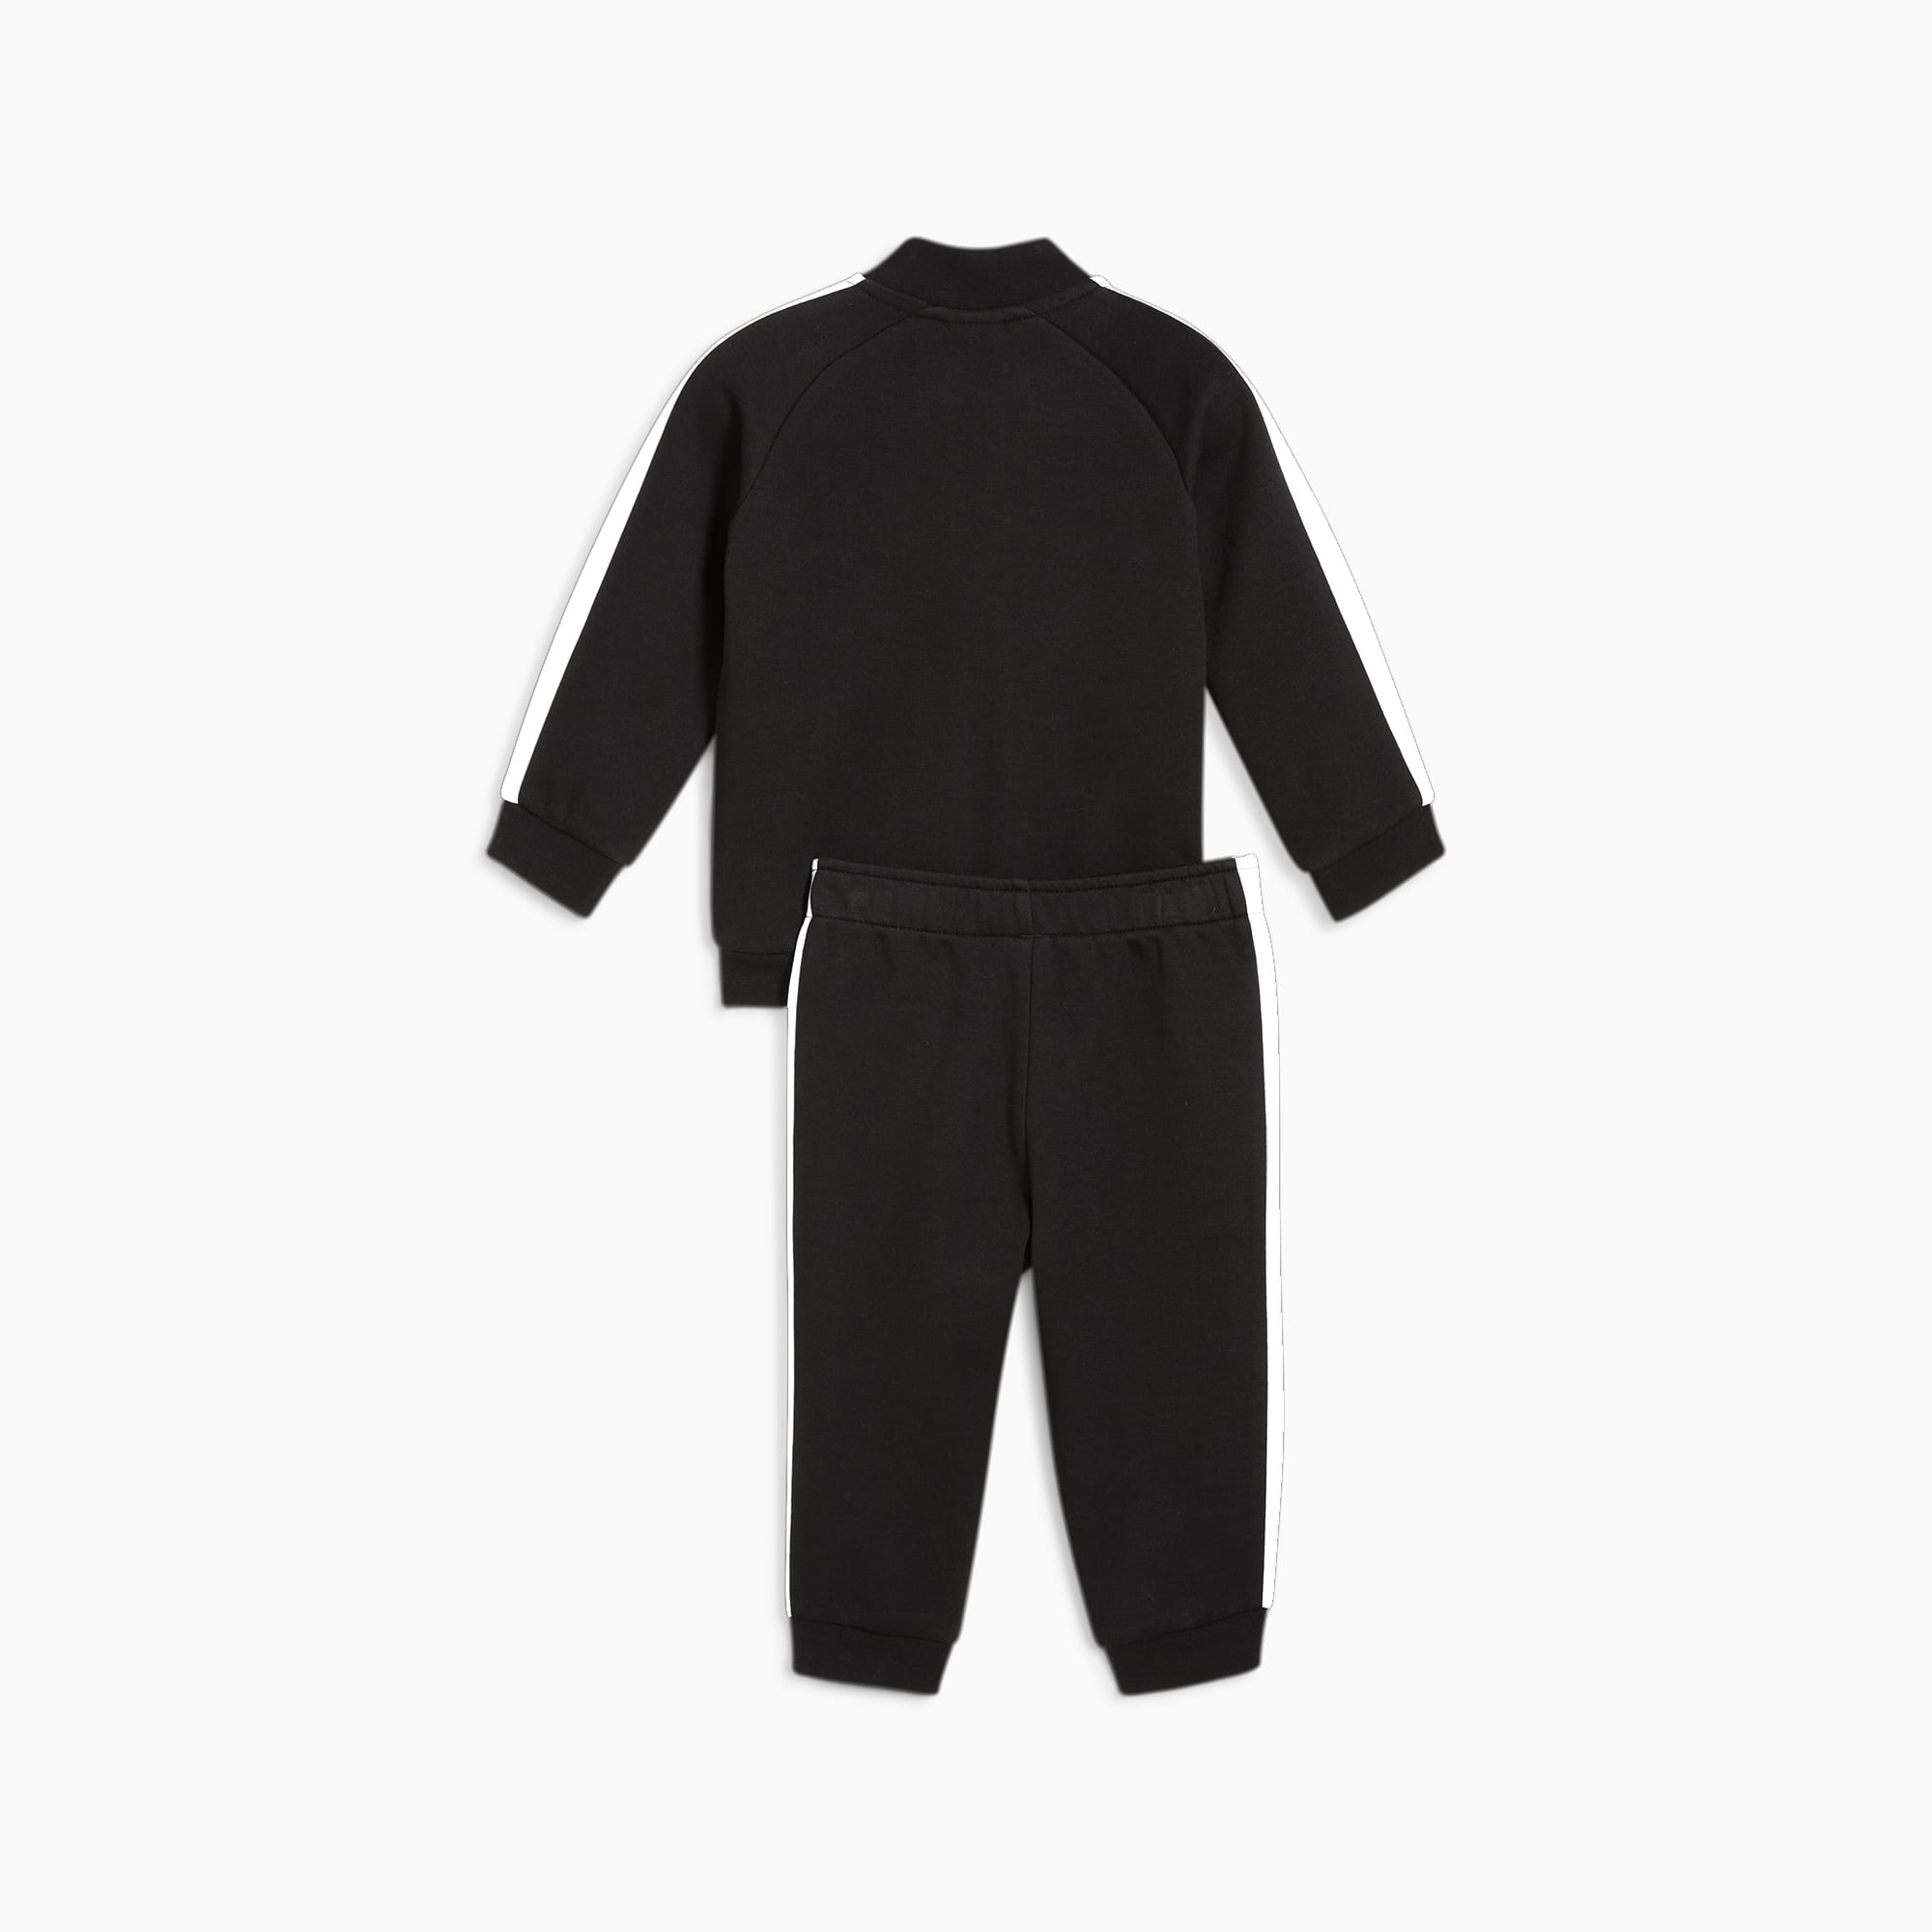 PUMA MINICATS T7 ICONIC Trainingsanzug Baby Für Kinder, Schwarz, Größe: 104, Kleidung